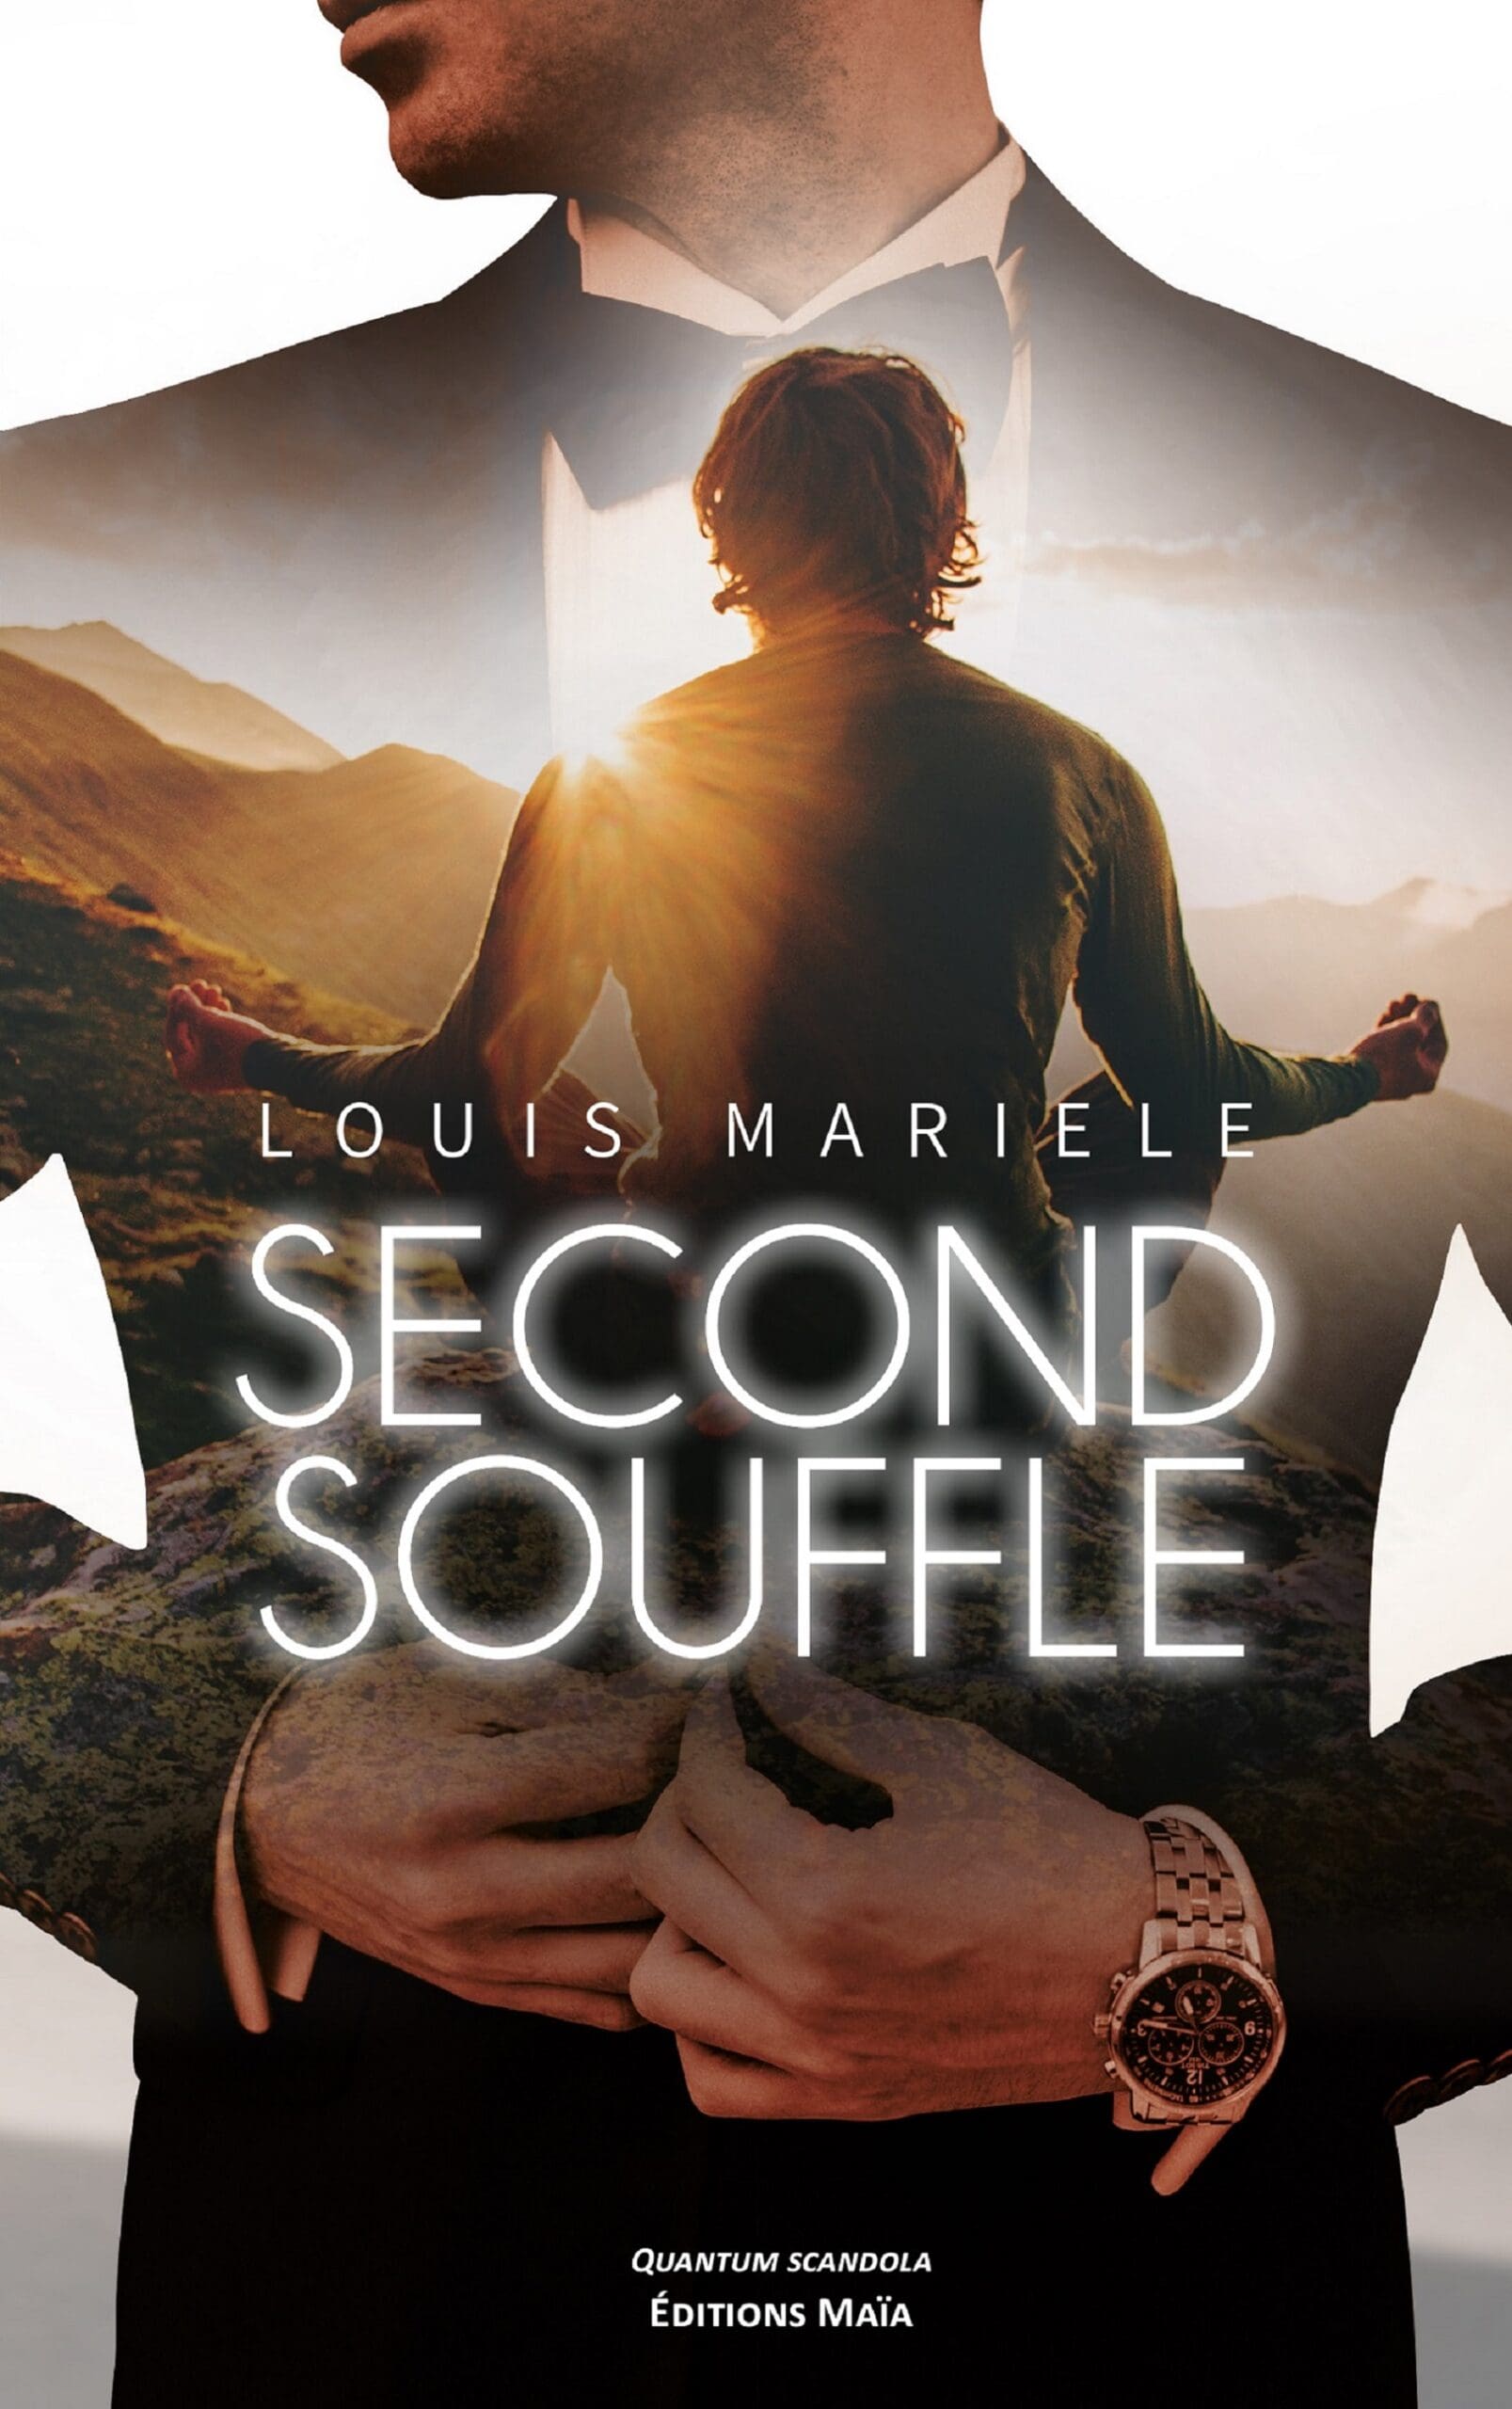 Entretien avec Louis Mariele – Second souffle